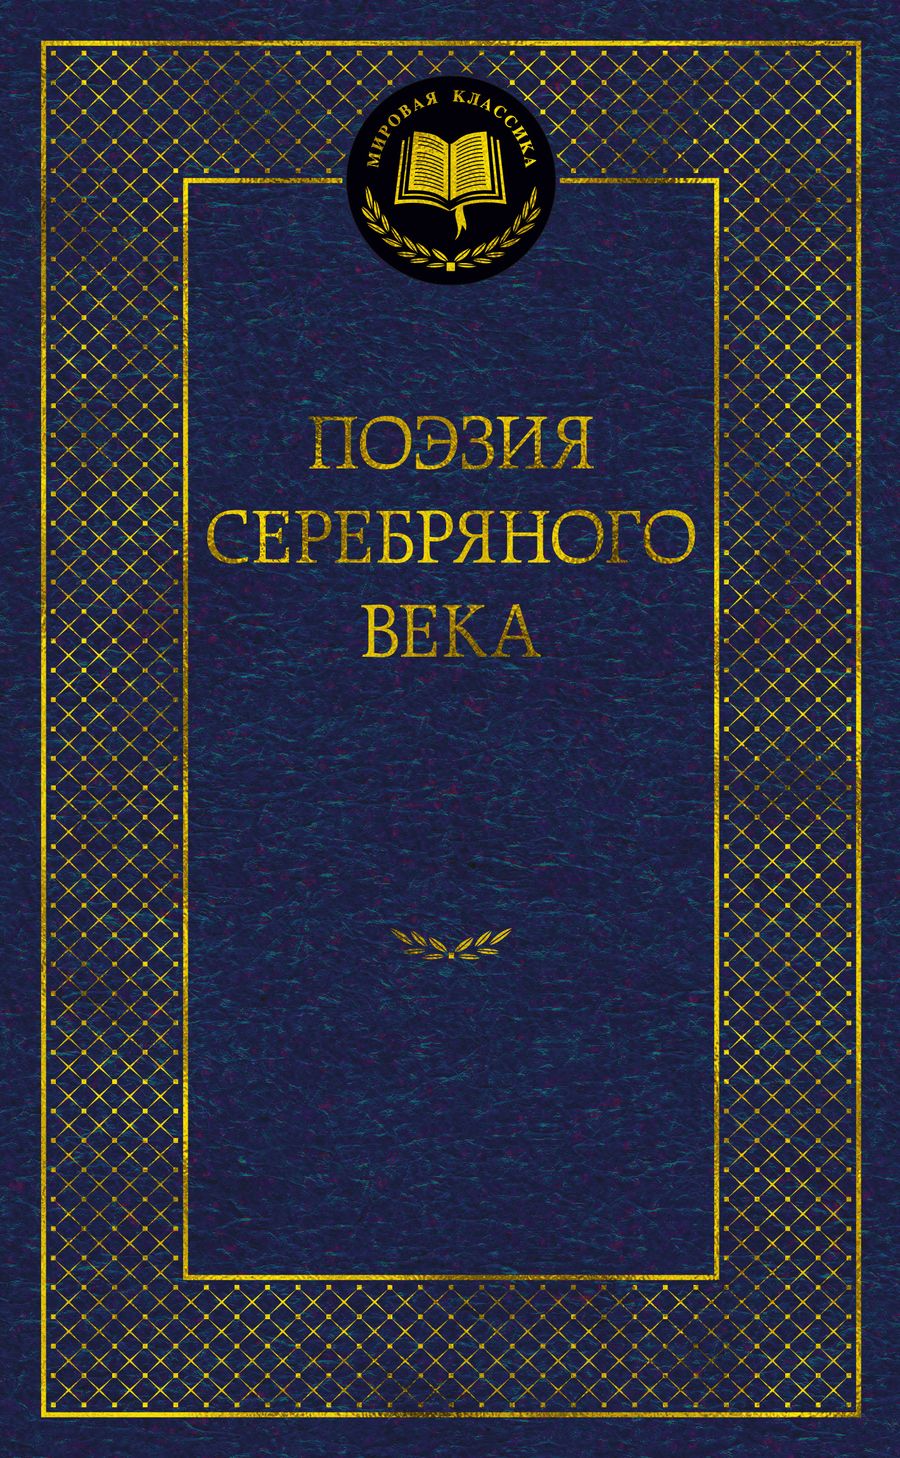 Обложка книги "Поэзия Серебряного века"